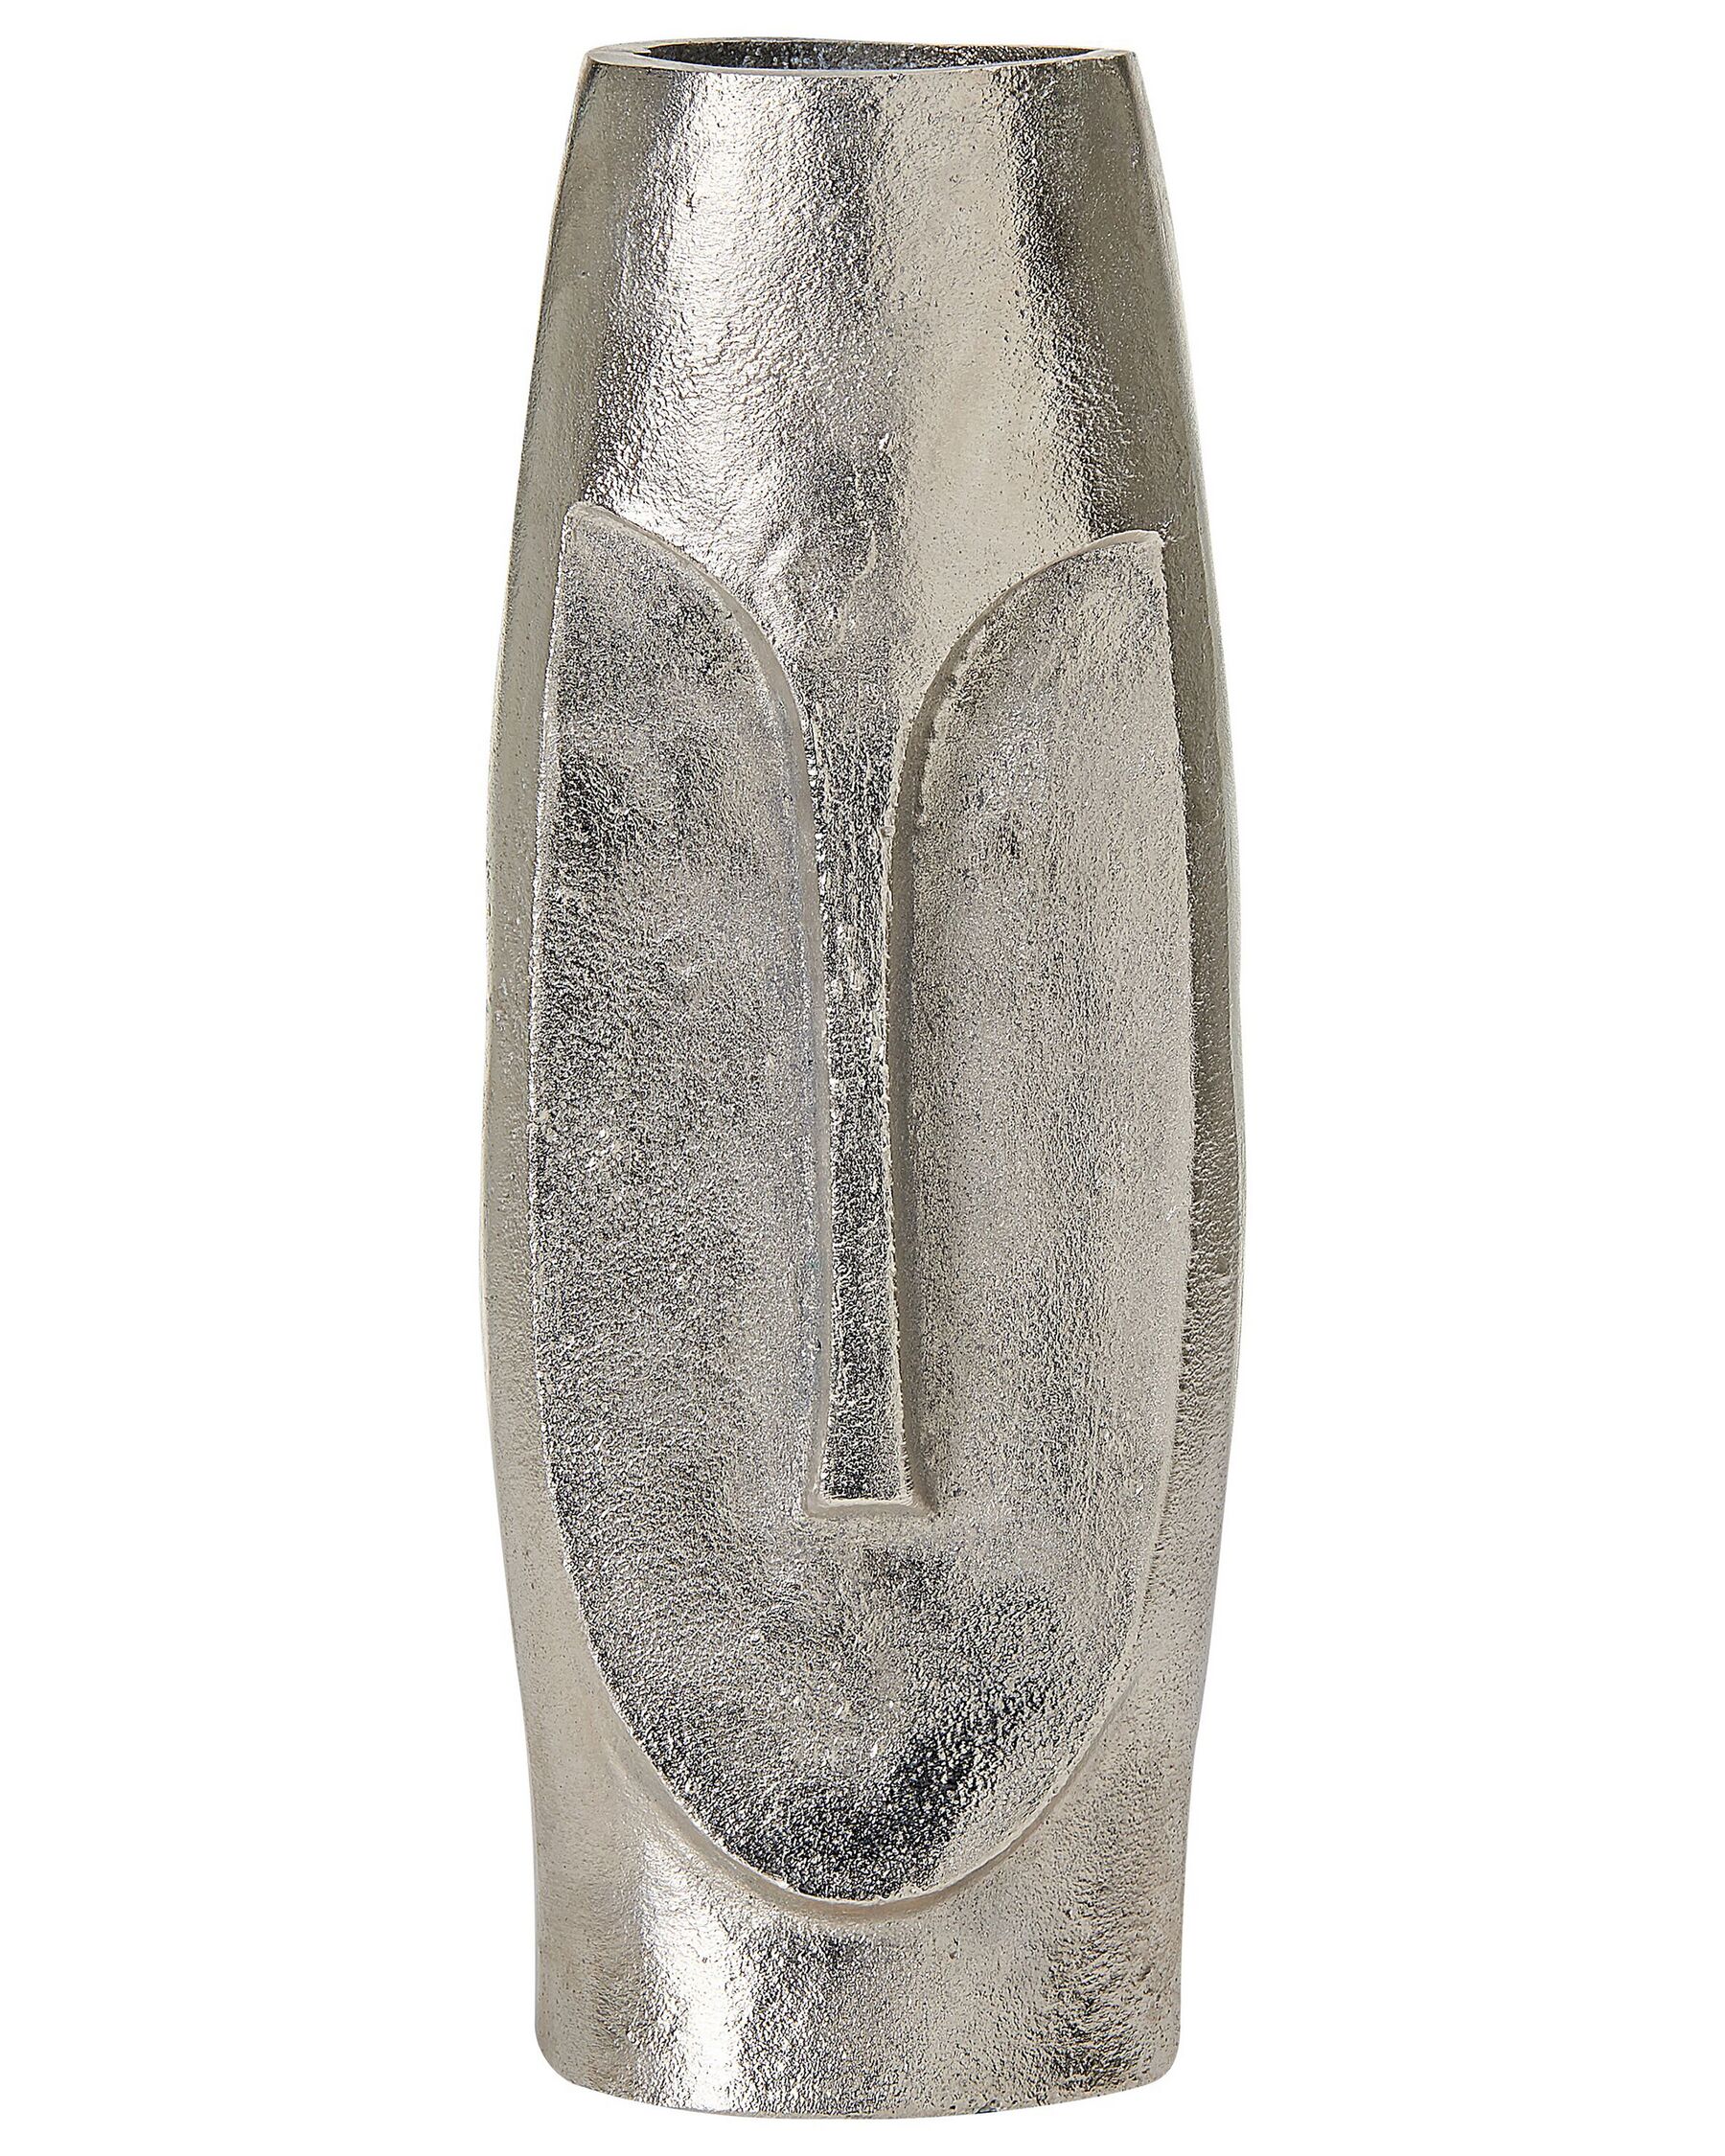 Blomvas aluminium 32 cm silver CARAL_823022